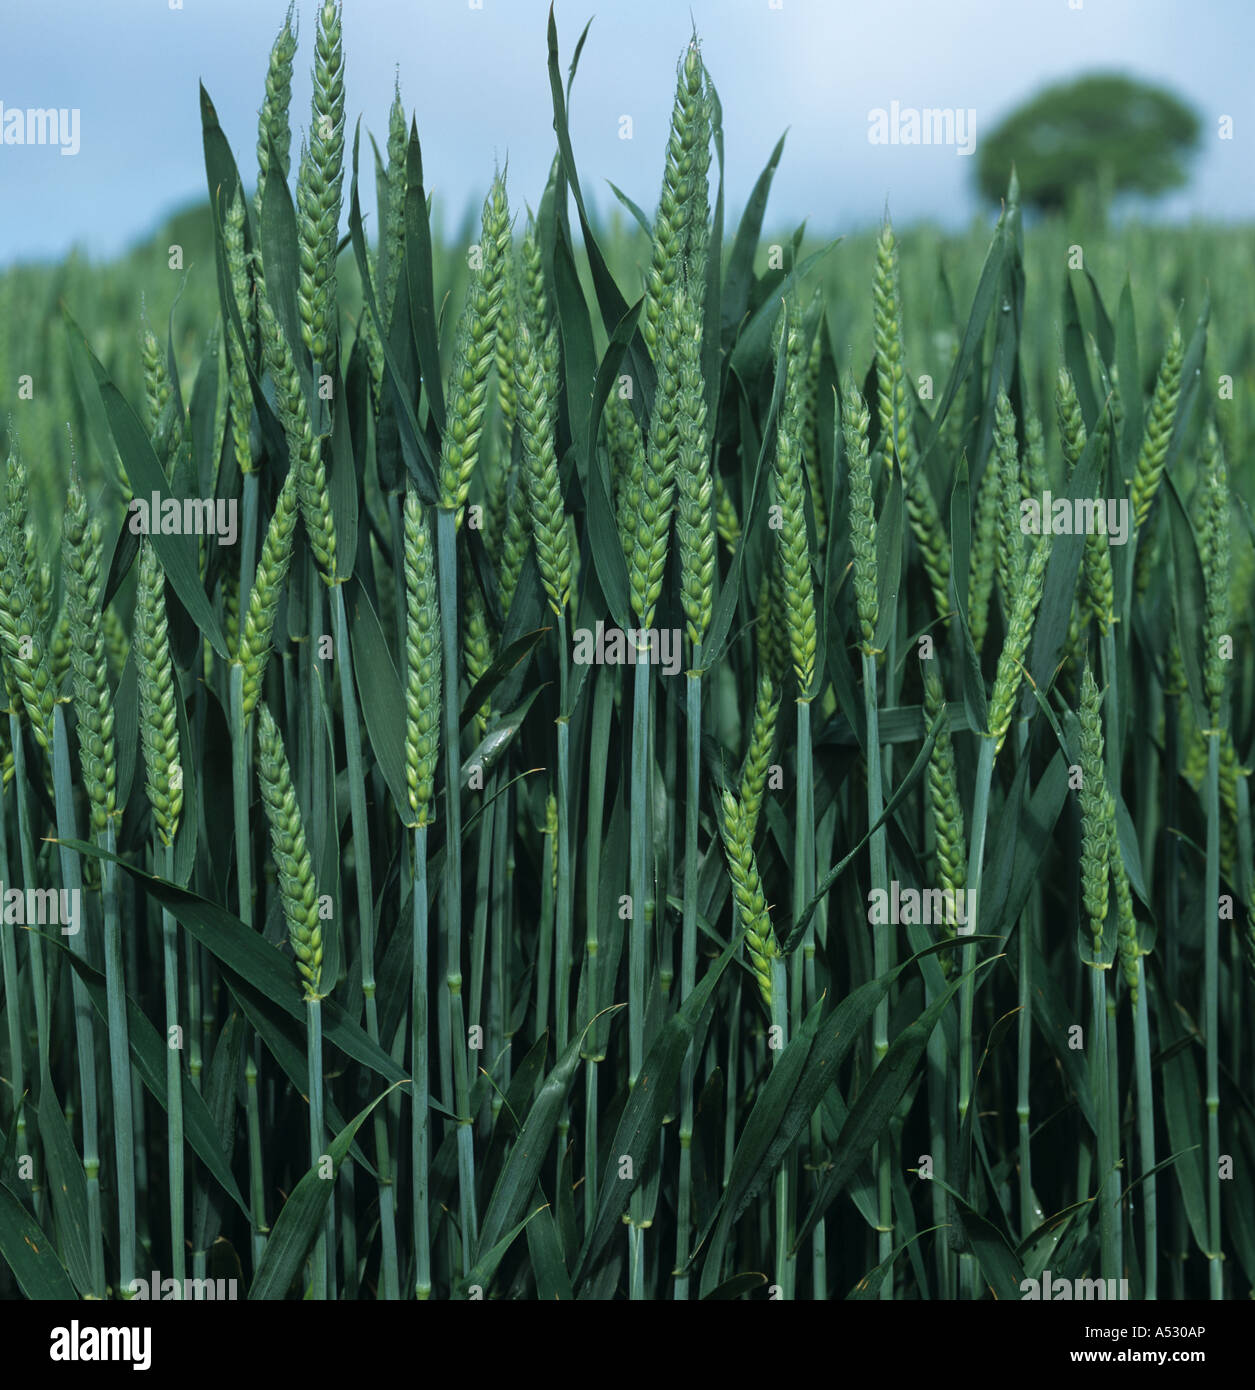 Unripe green wheat ears Devon Stock Photo